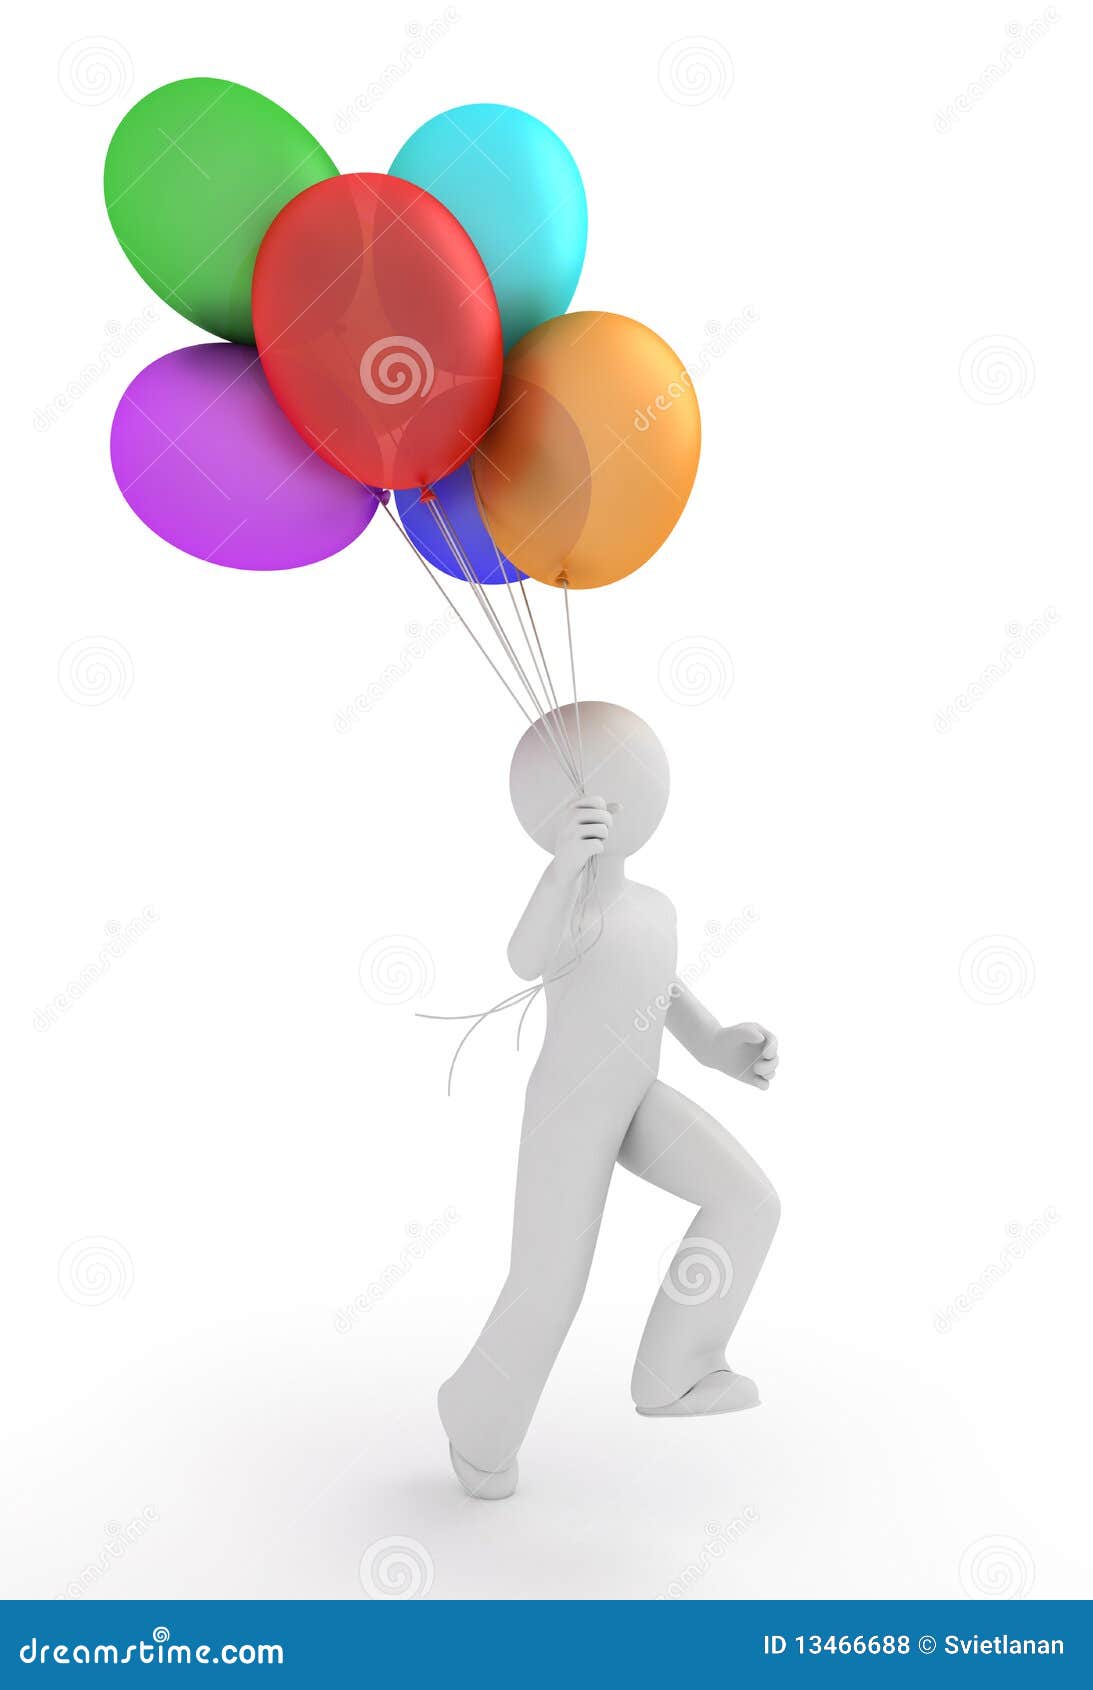 Laptop Paradox Zeemeeuw Person with balloons. stock illustration. Illustration of balloon - 13466688